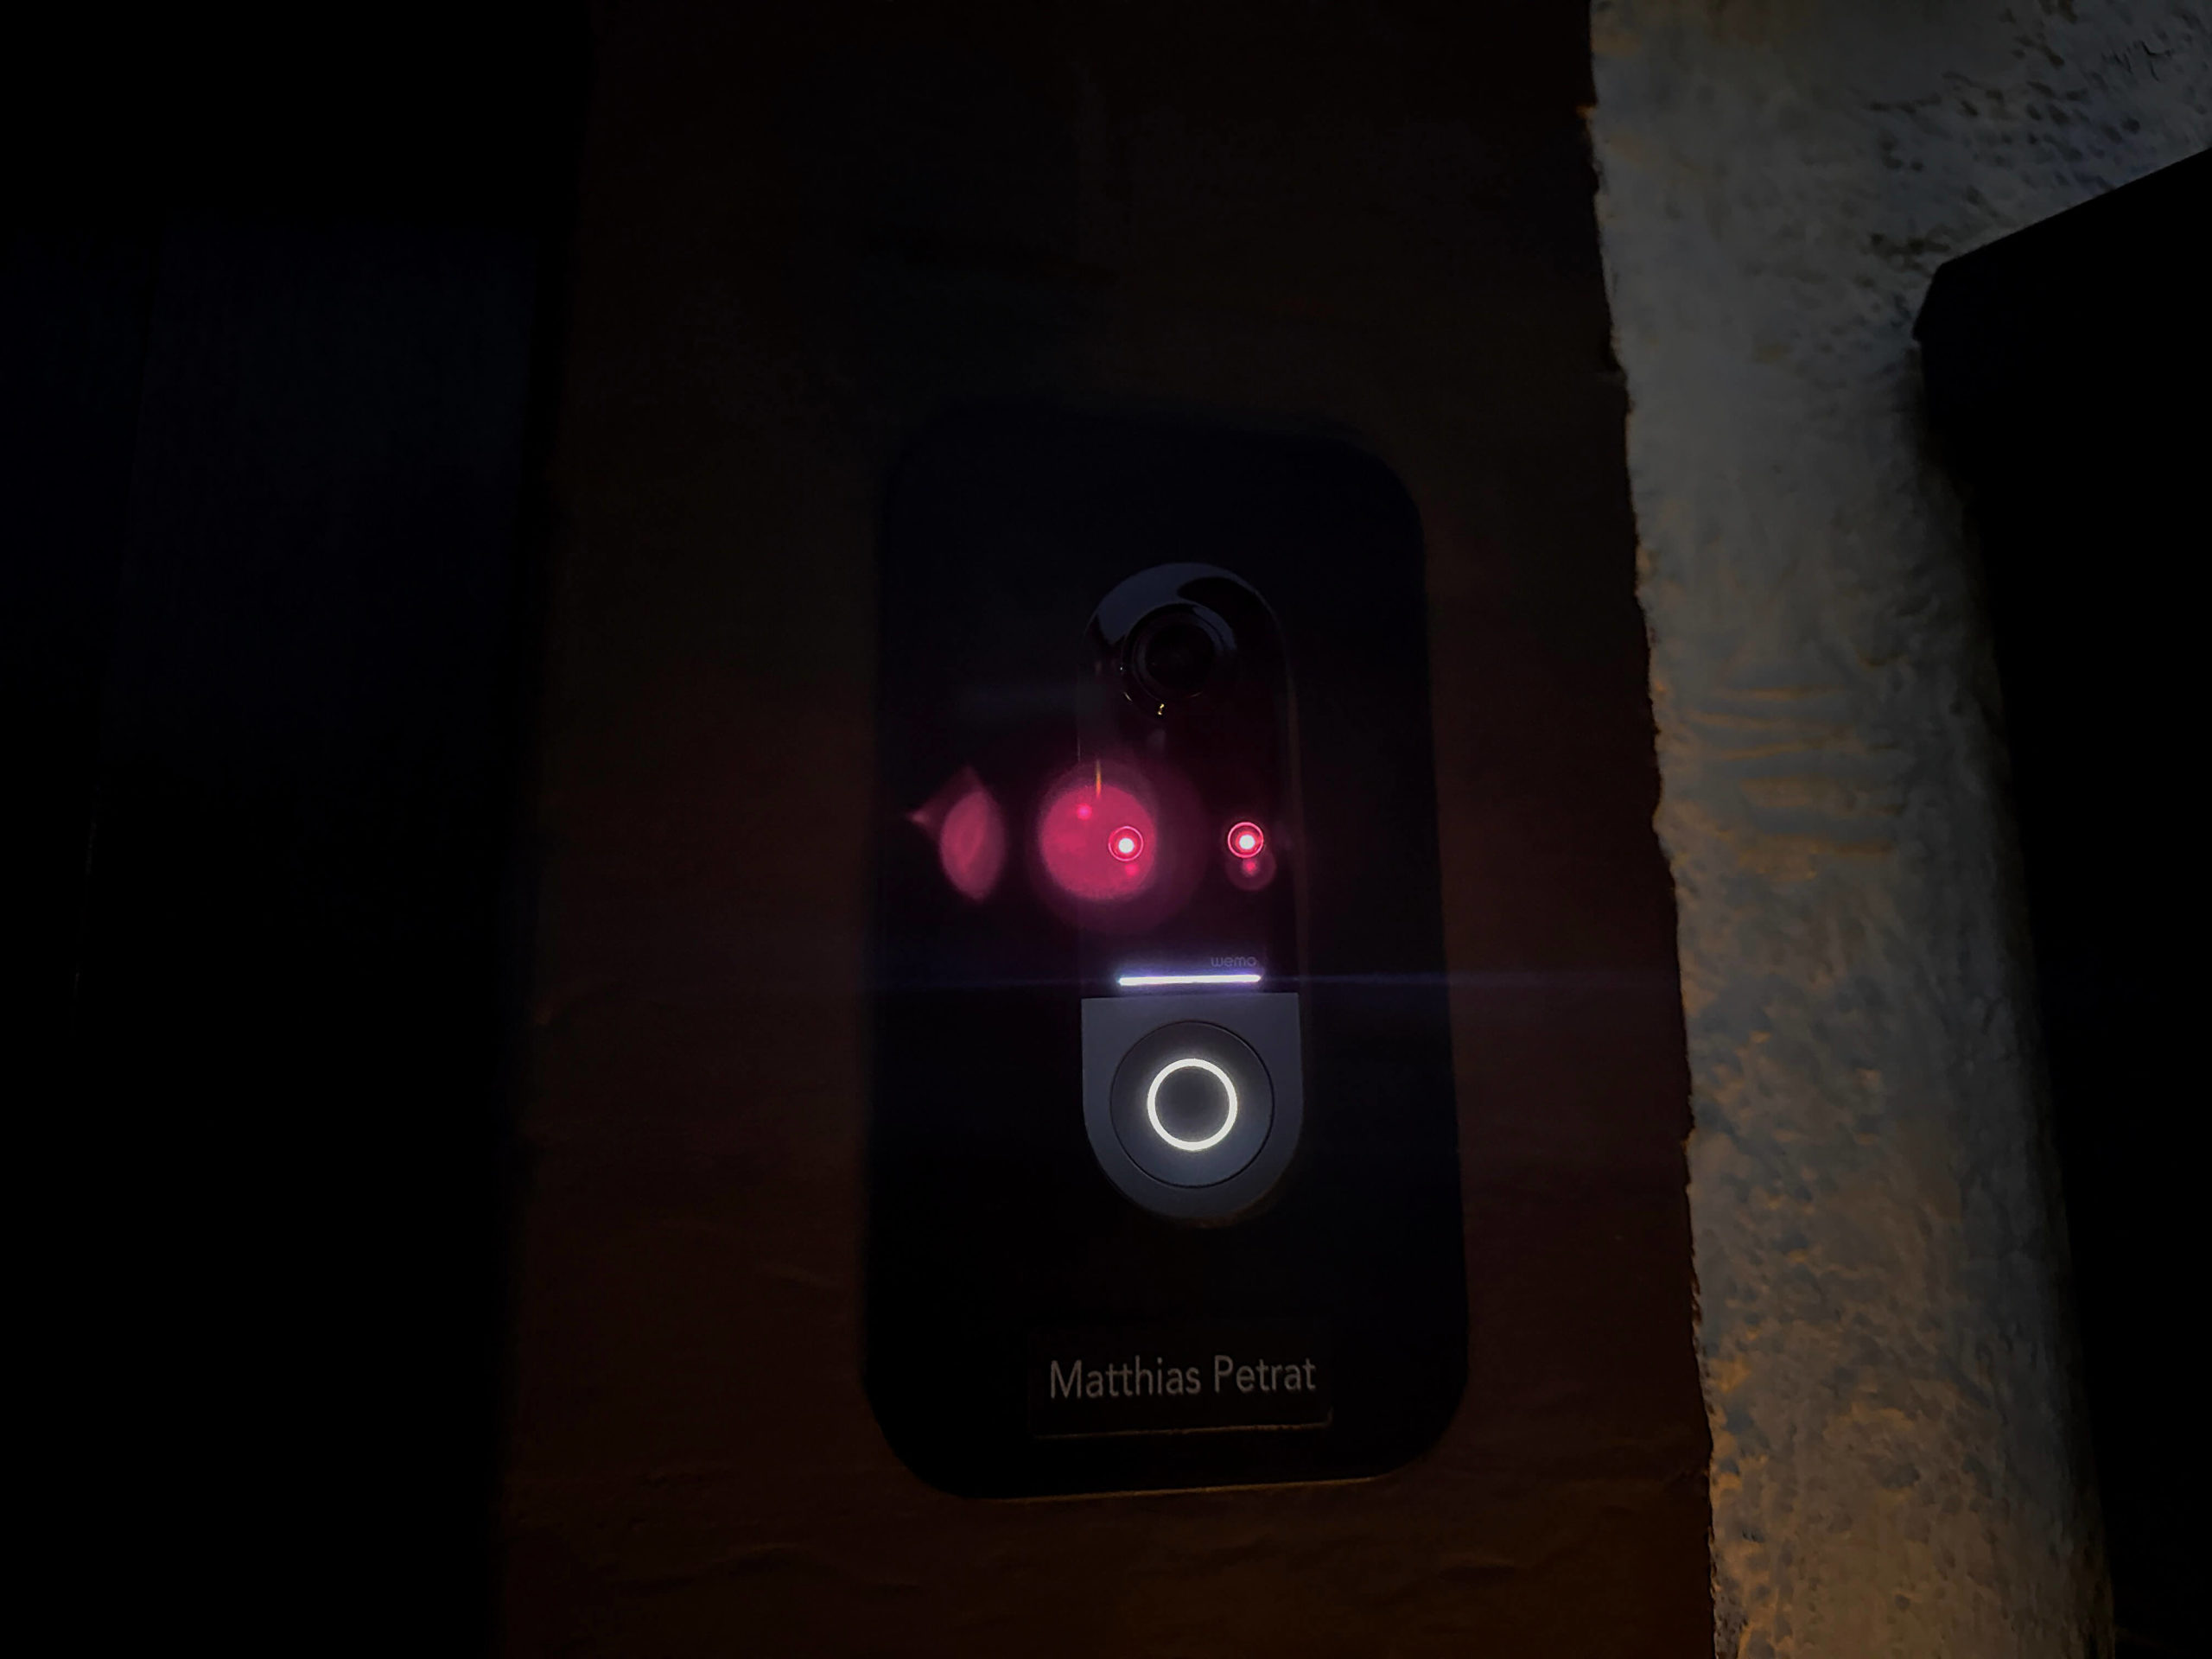 Wemo-Doorbell-von-Belkin-Apple-Home-Tuerklingel-mit-Secure-Video14-scaled Wemo Doorbell von Belkin - Apple Home Türklingel mit Secure Video